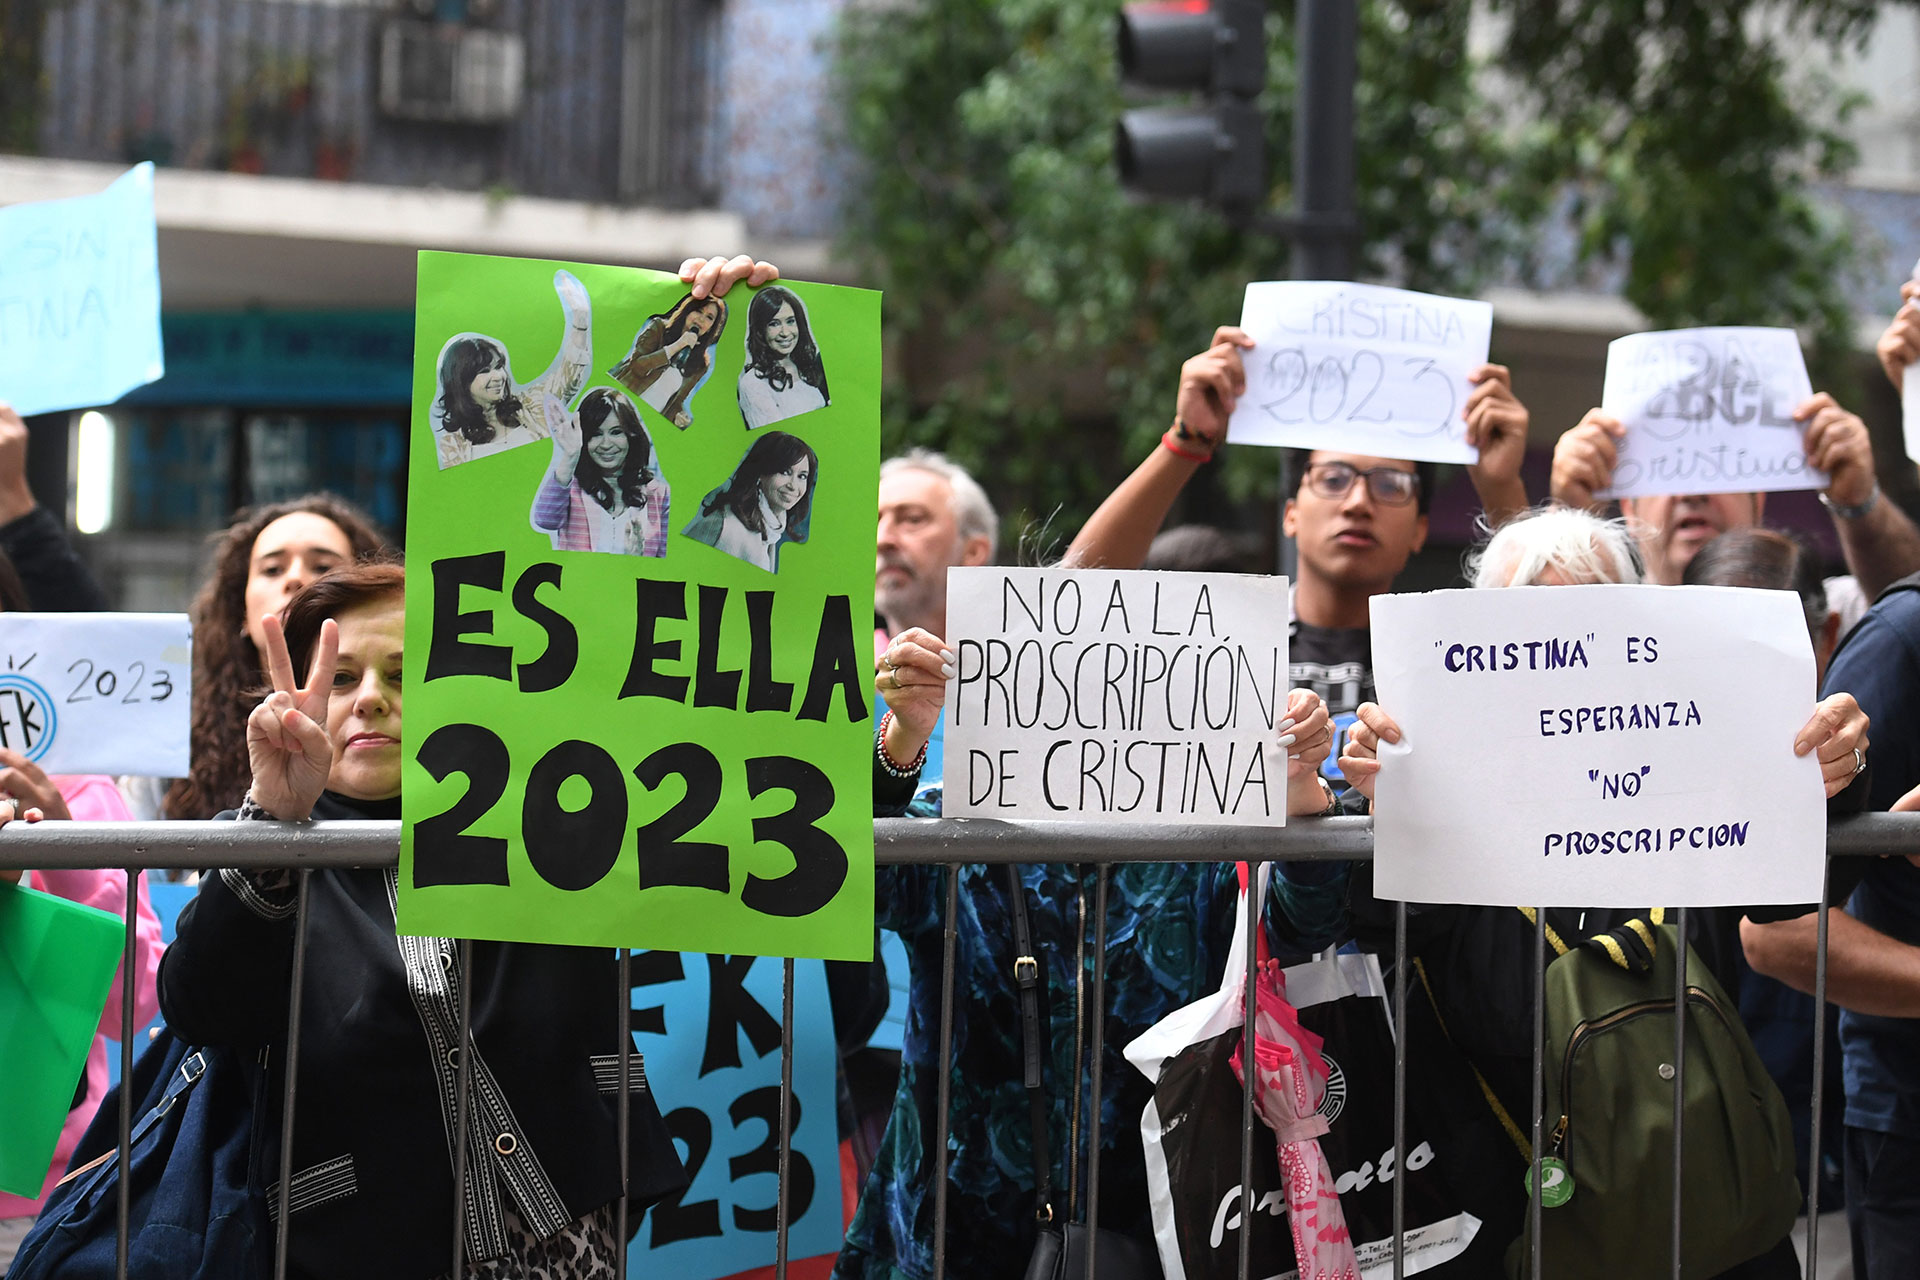 Proscripción un carajo!”: los afiches con los que el Kirchnerismo clamó por la candidatura de Cristina - Infobae